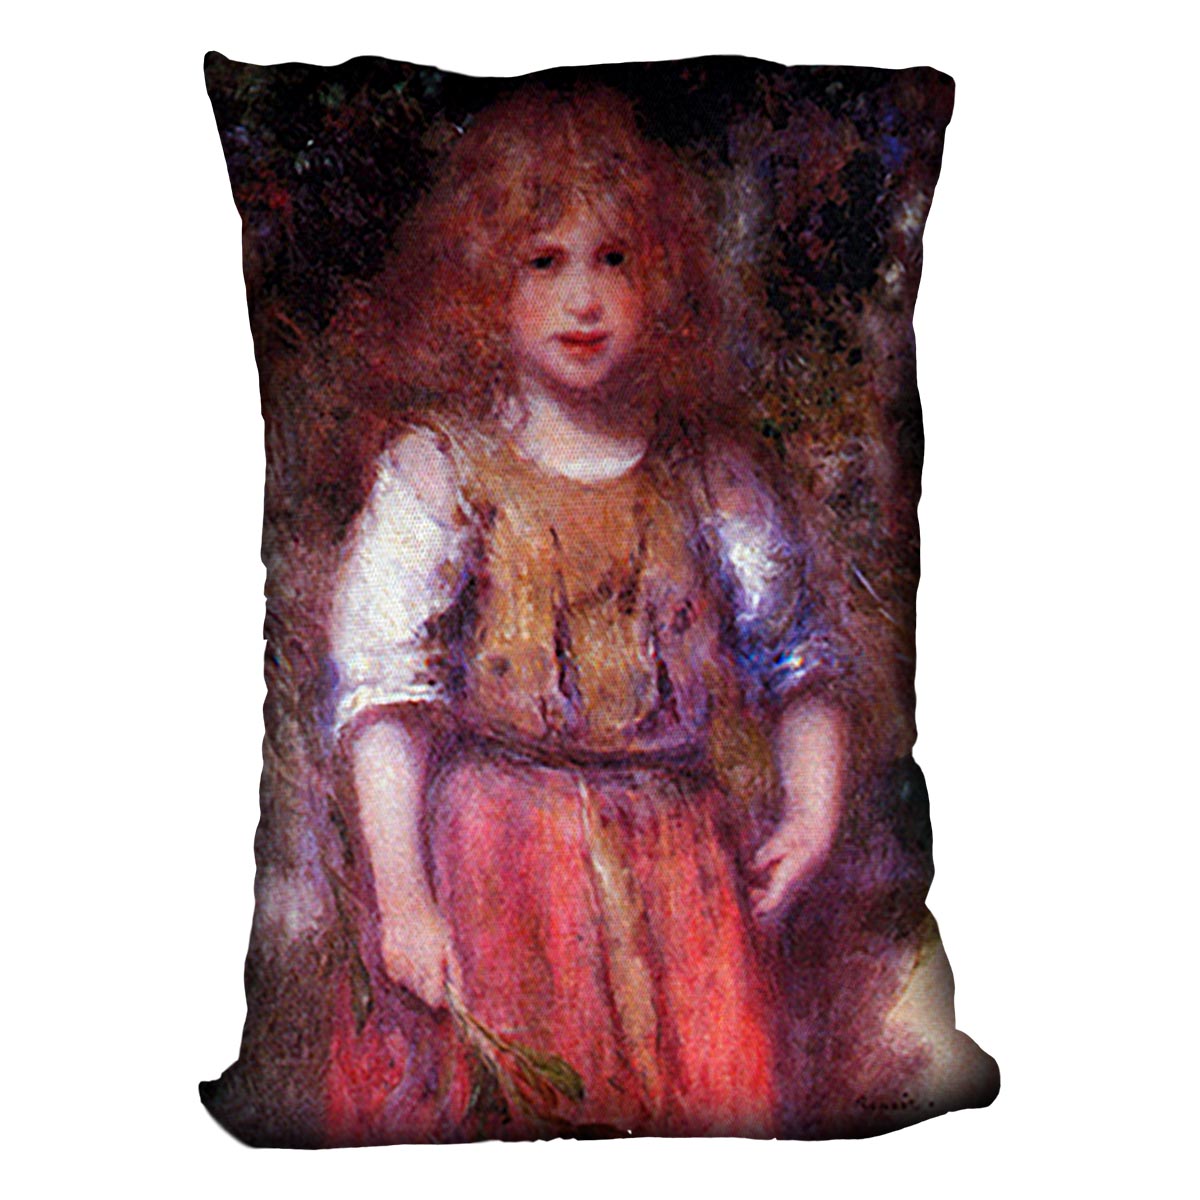 Gypsy girl by Renoir Cushion